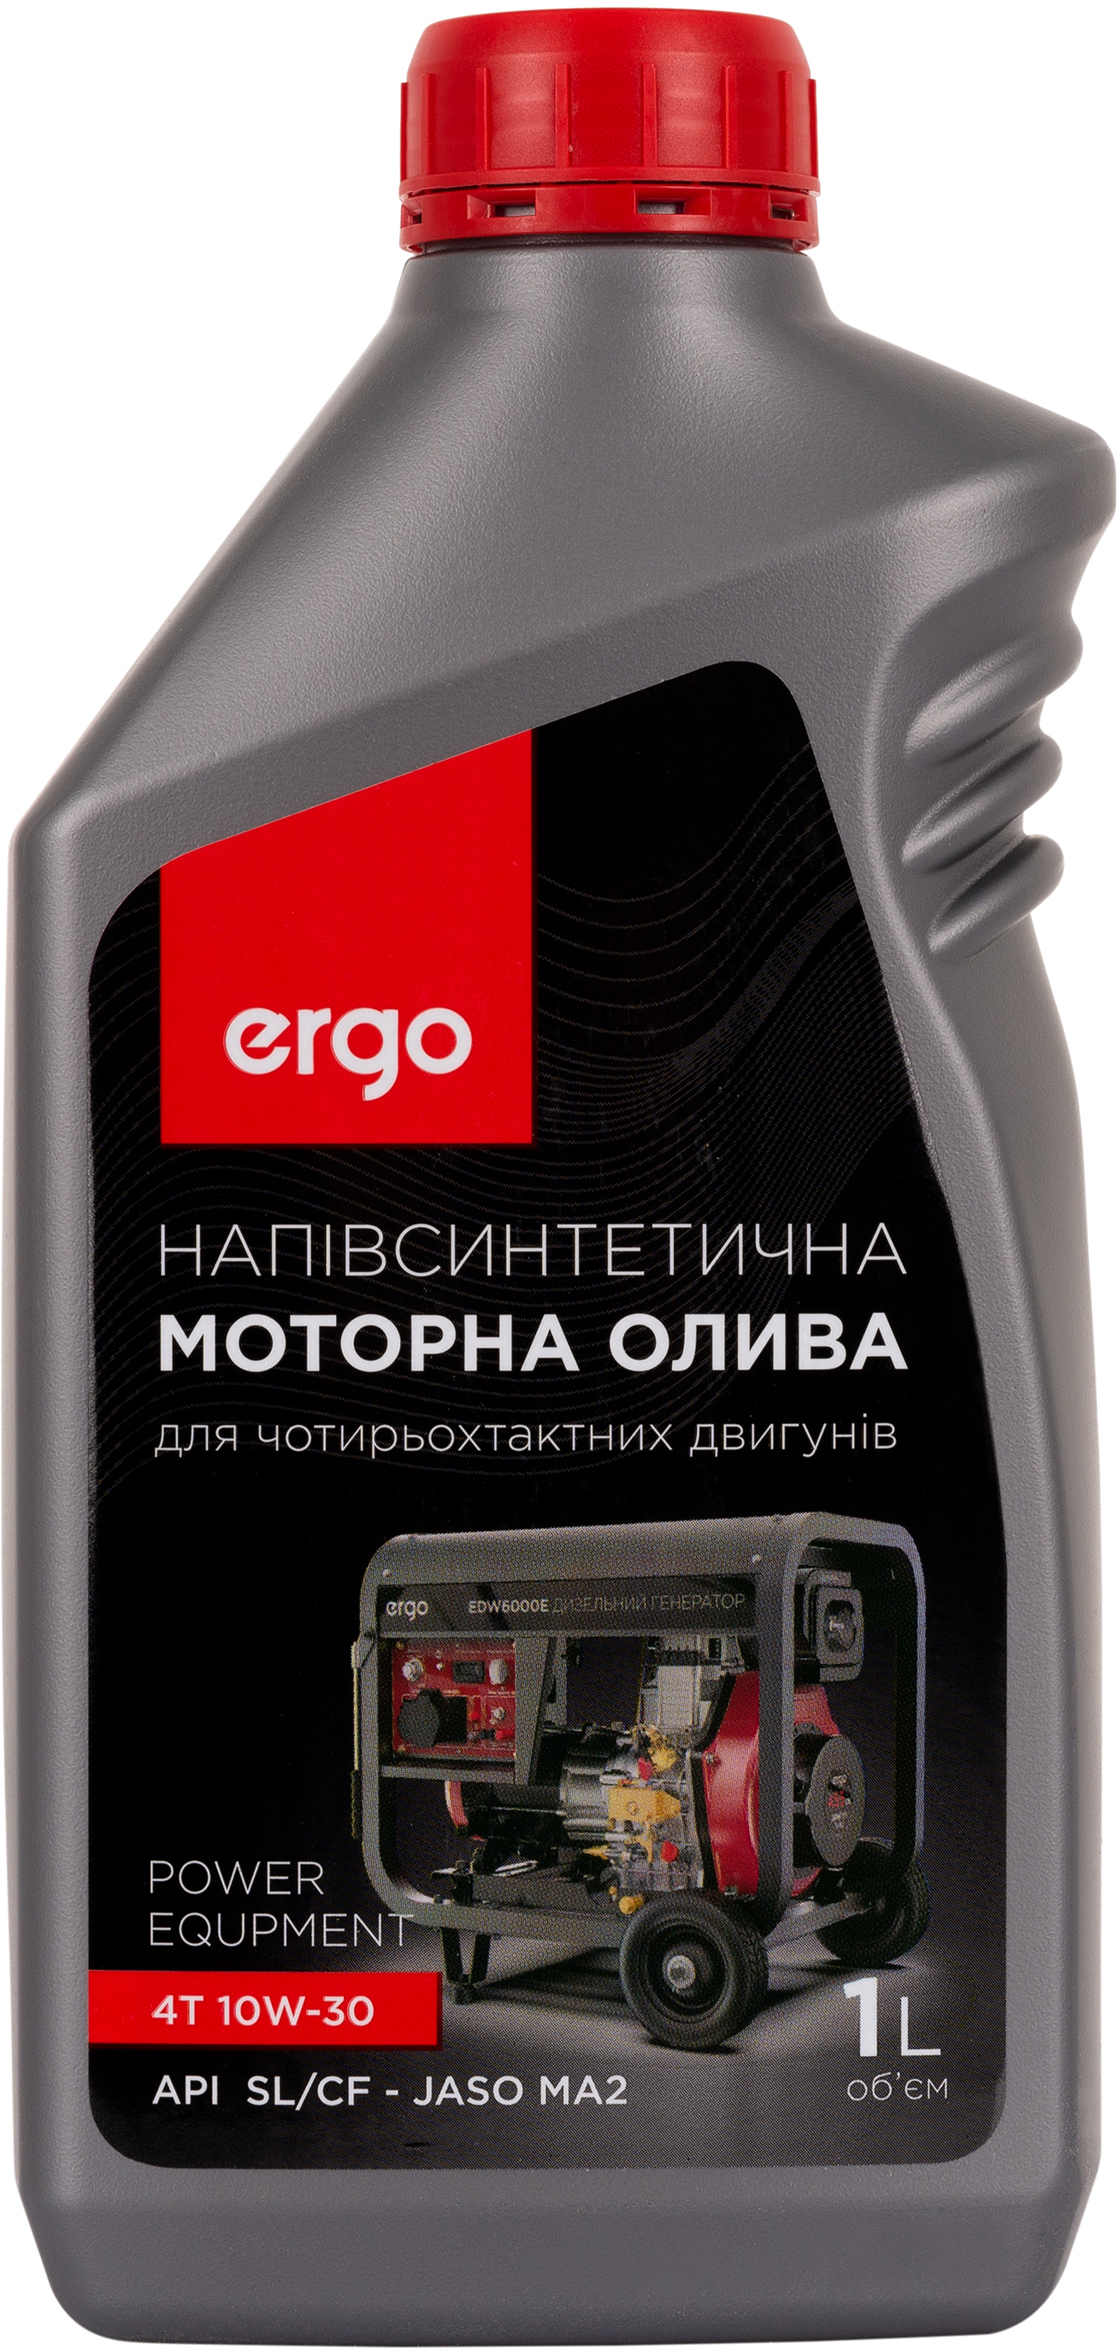 Цена моторное масло Ergo 10W-30, 1 л в Черновцах